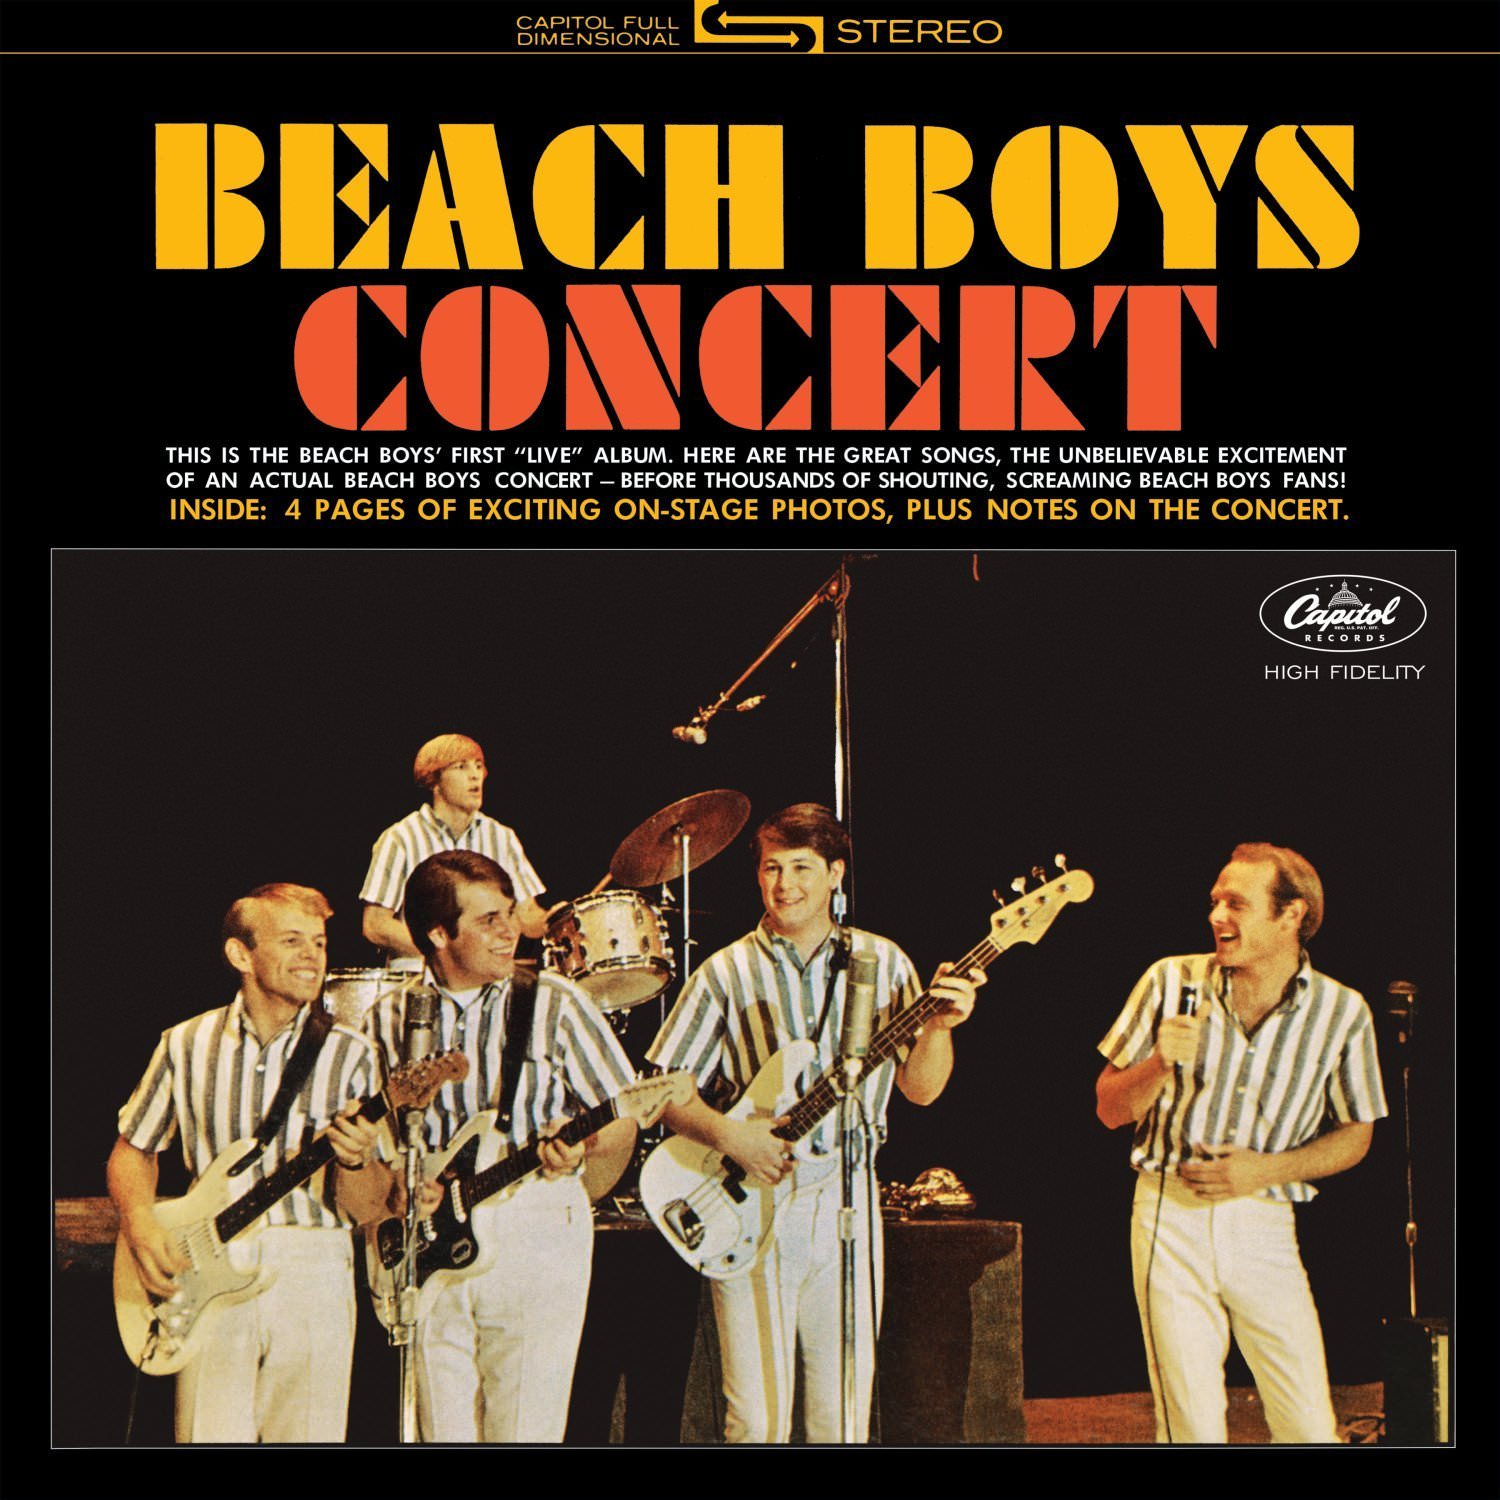 The Beach Boys – Beach Boys Concert (1964/2015) [HDTracks FLAC 24bit/192kHz]